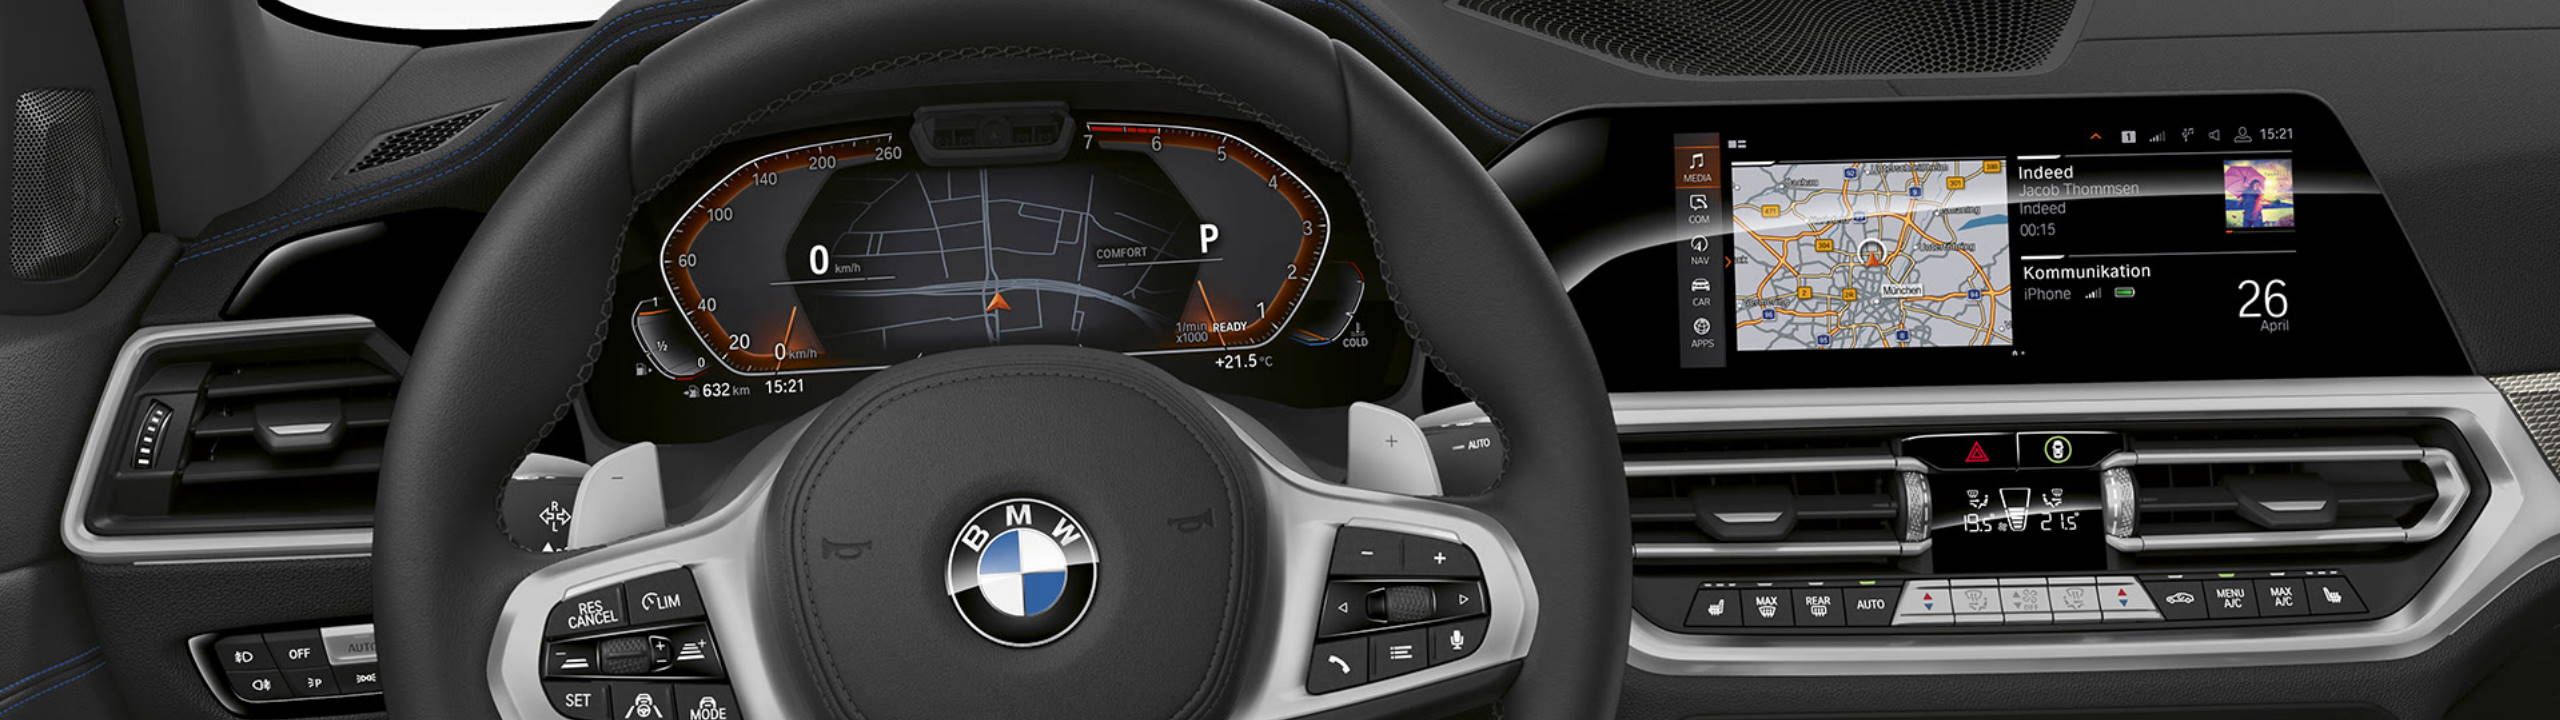 Vorbereitung statt Kauf: Neue Ausstattungs-Logik bei BMW